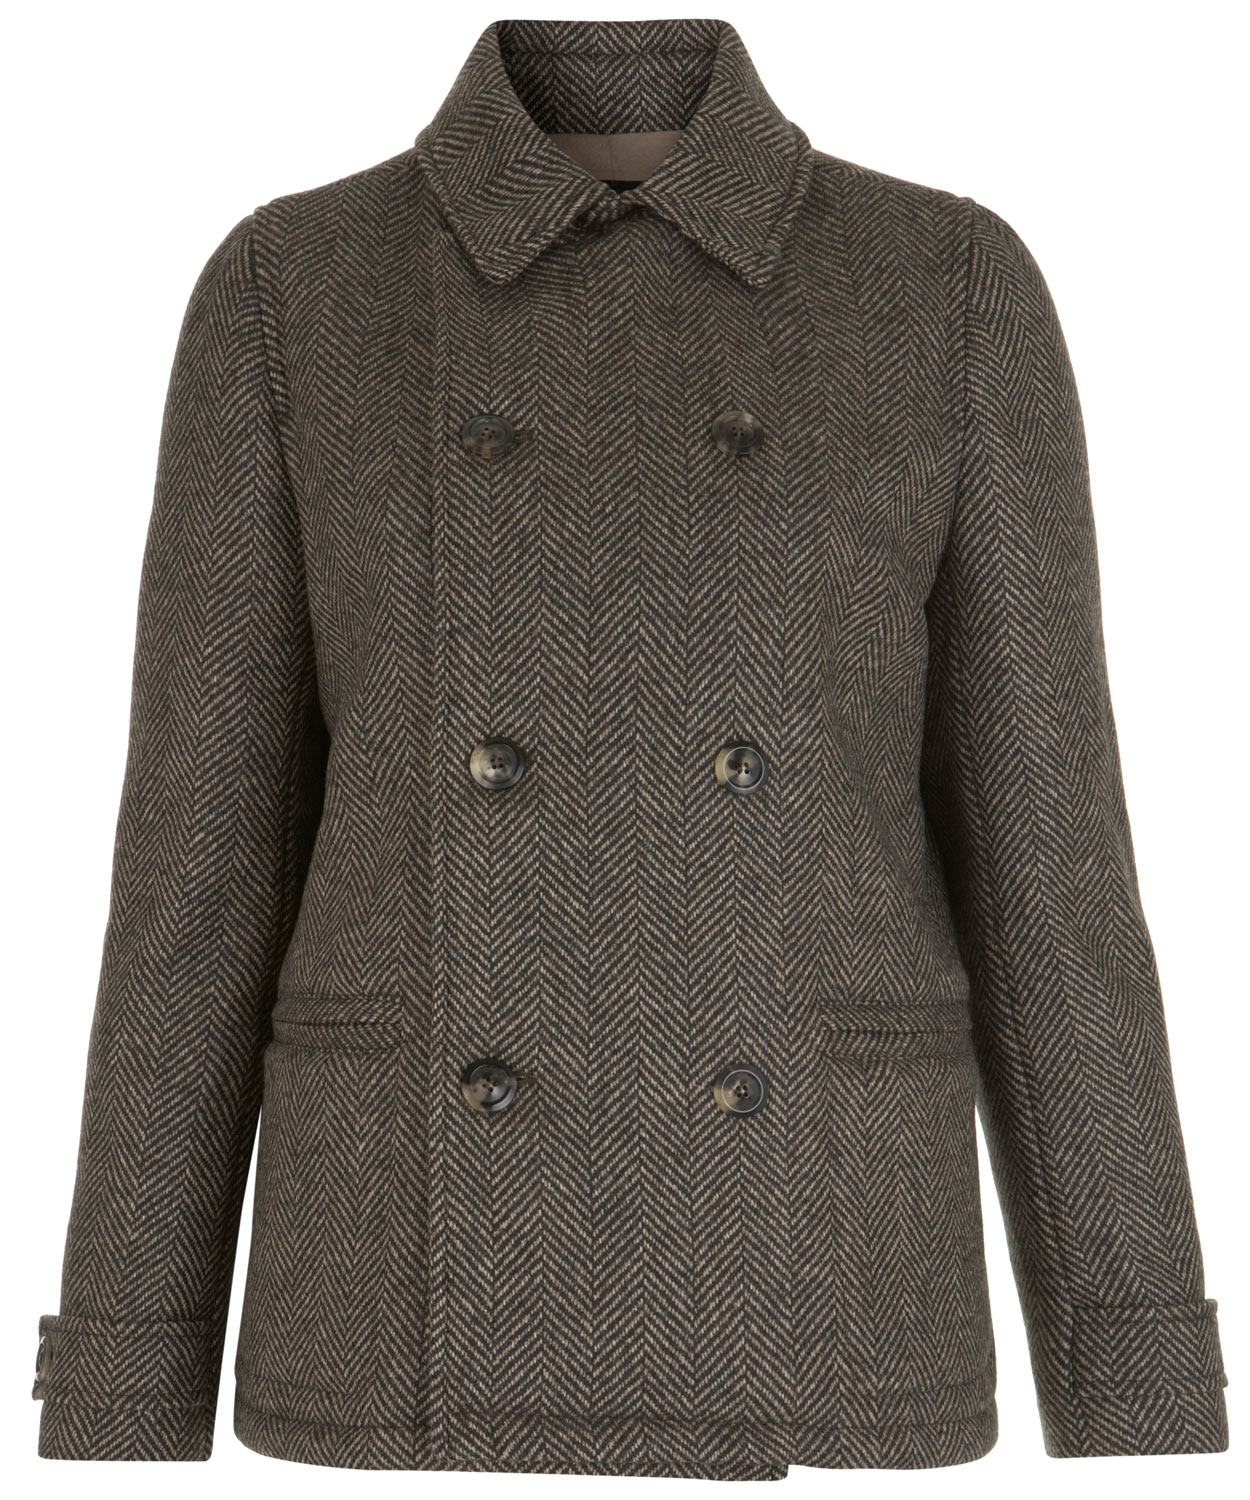 A.P.C. Brown Herringbone Tweed Jacket - Lyst